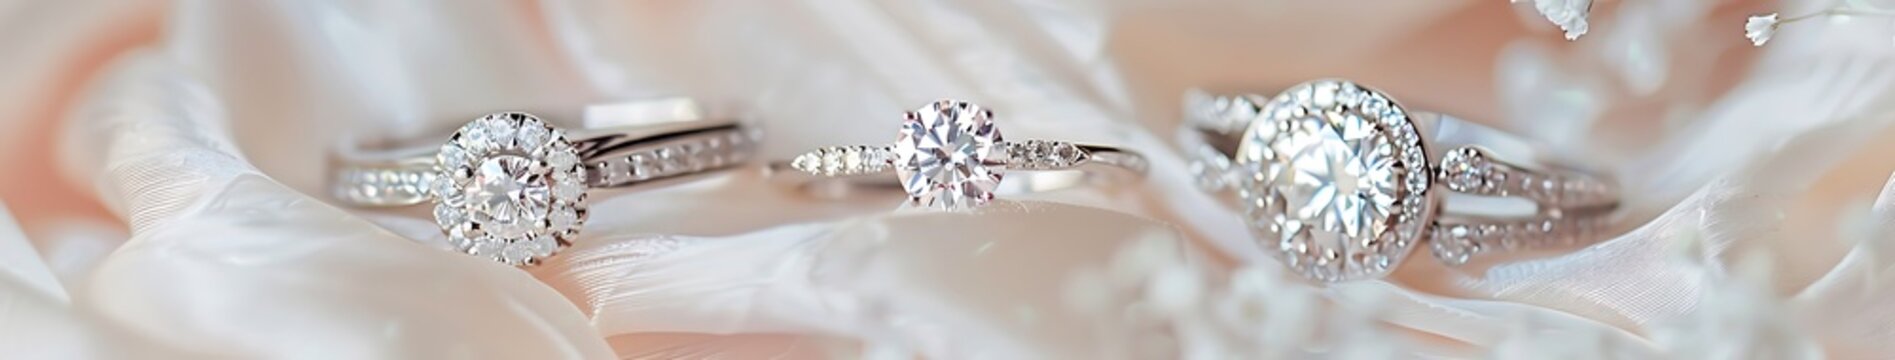 Design diamond rings on white dress